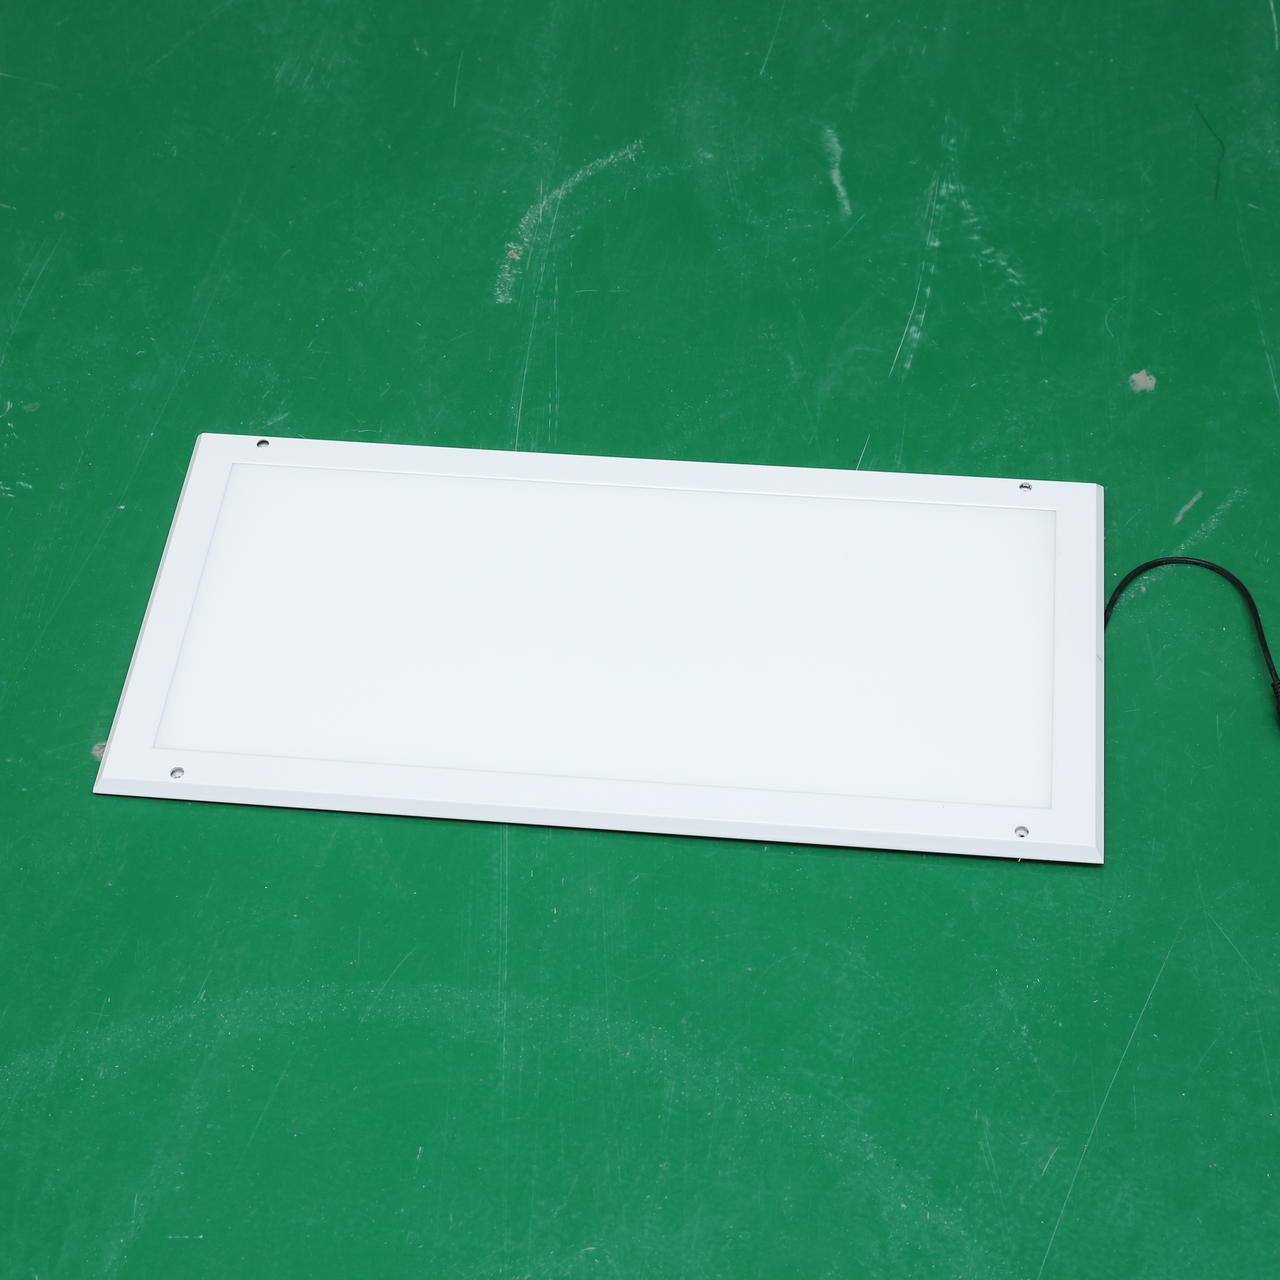 亚宝净化  灯管式LED净化灯 超薄LED平板灯 双管净化LED荧光灯定制